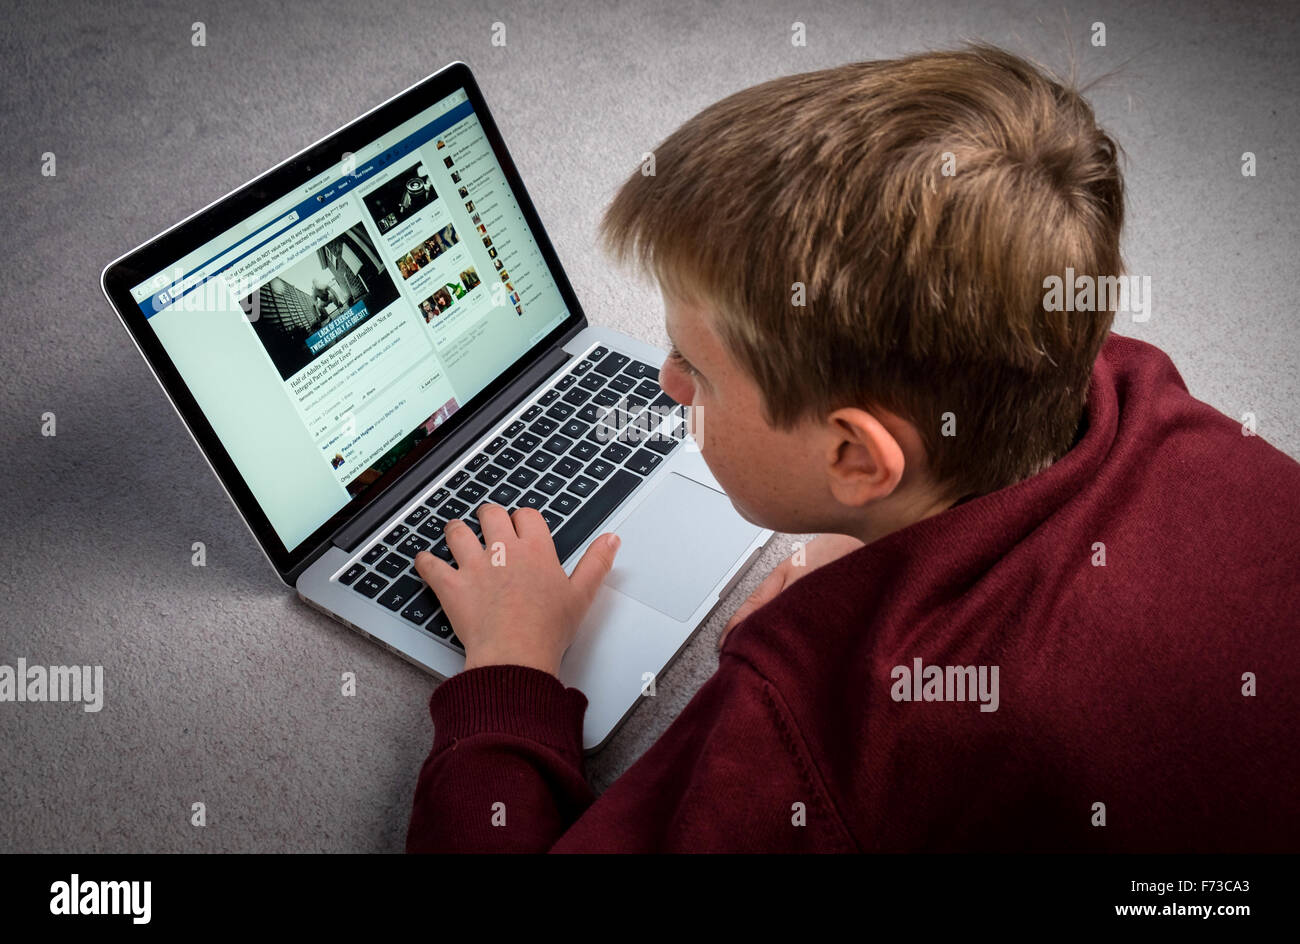 Ein Junge auf einem Laptopcomputer bei Facebook suchen Stockfoto